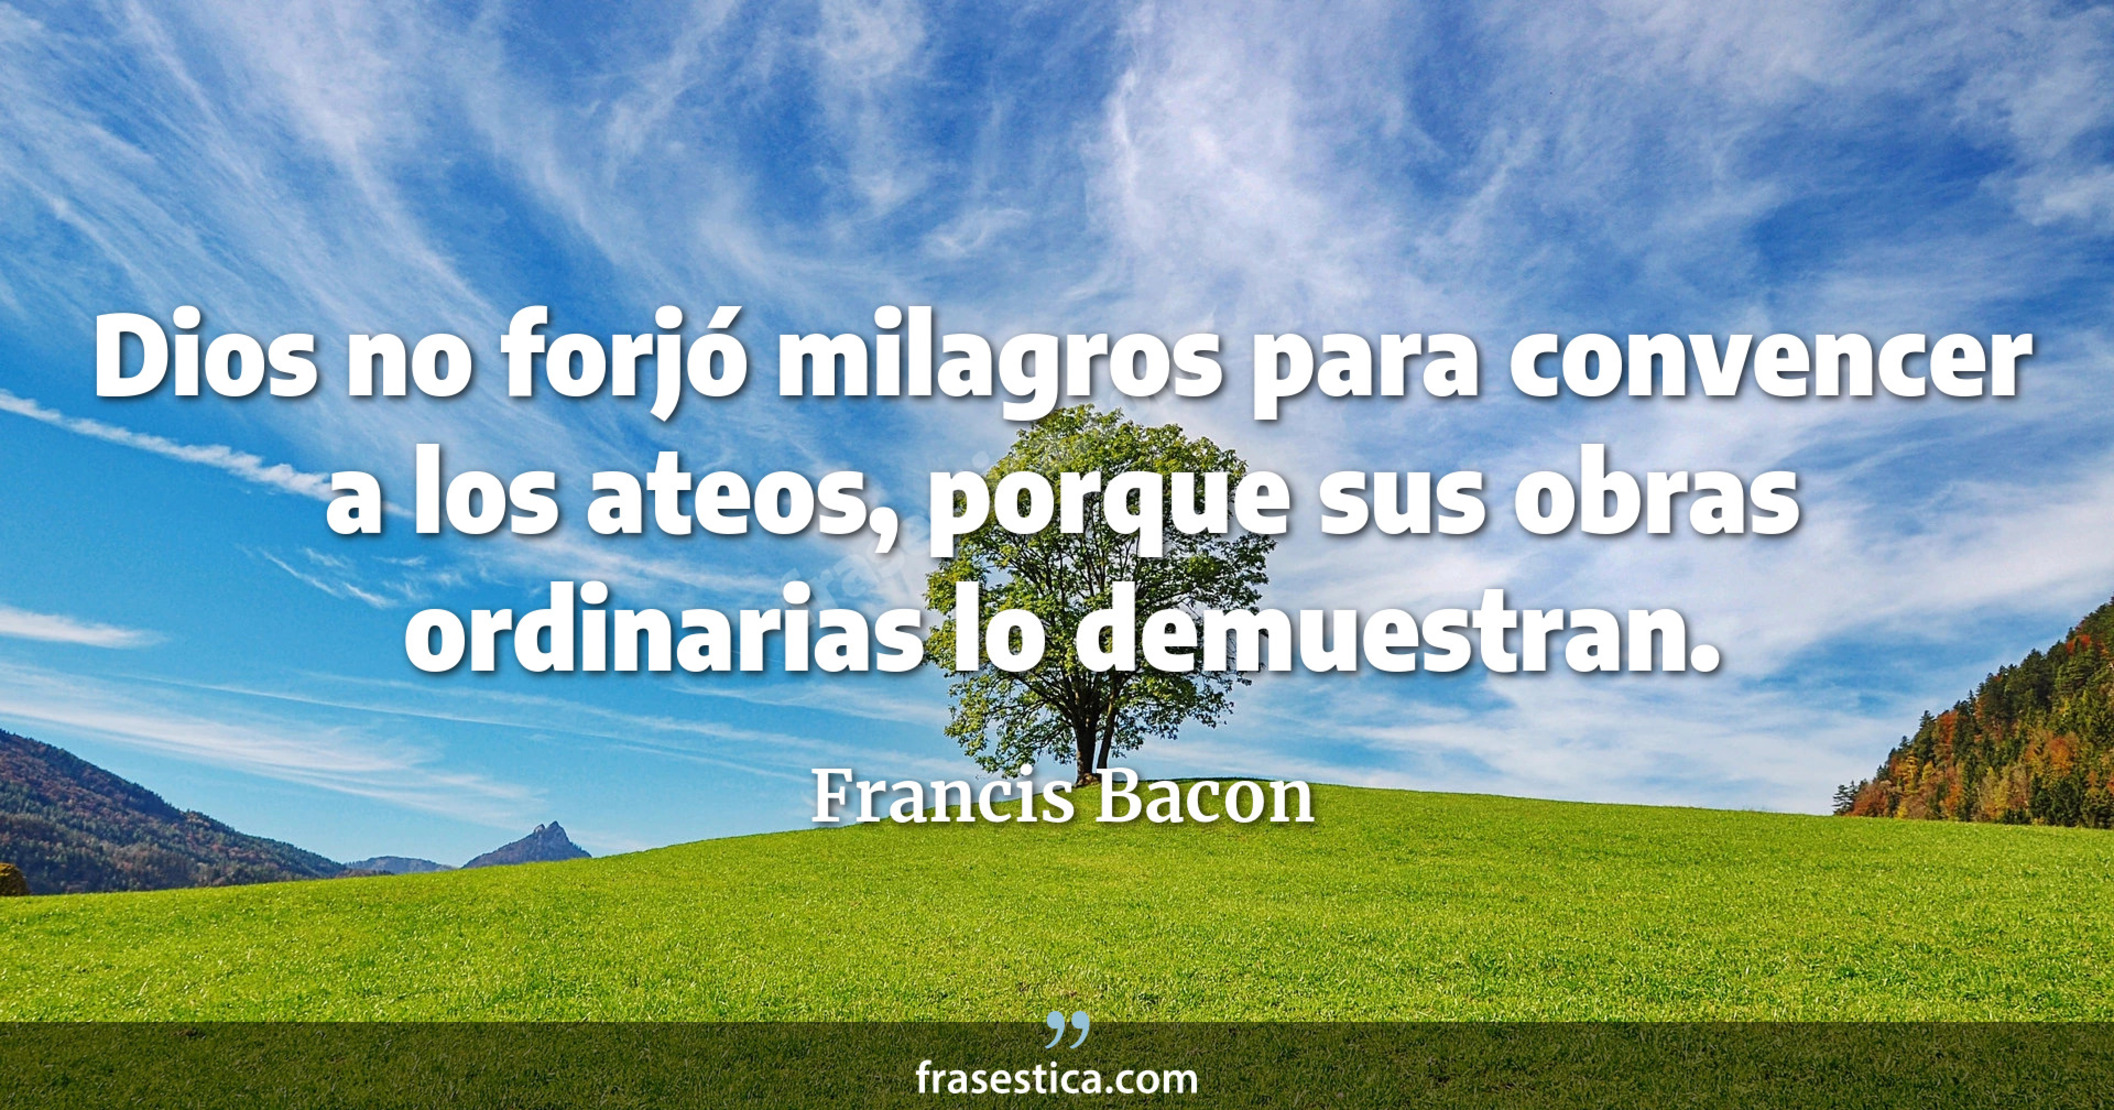 Dios no forjó milagros para convencer a los ateos, porque sus obras ordinarias lo demuestran. - Francis Bacon